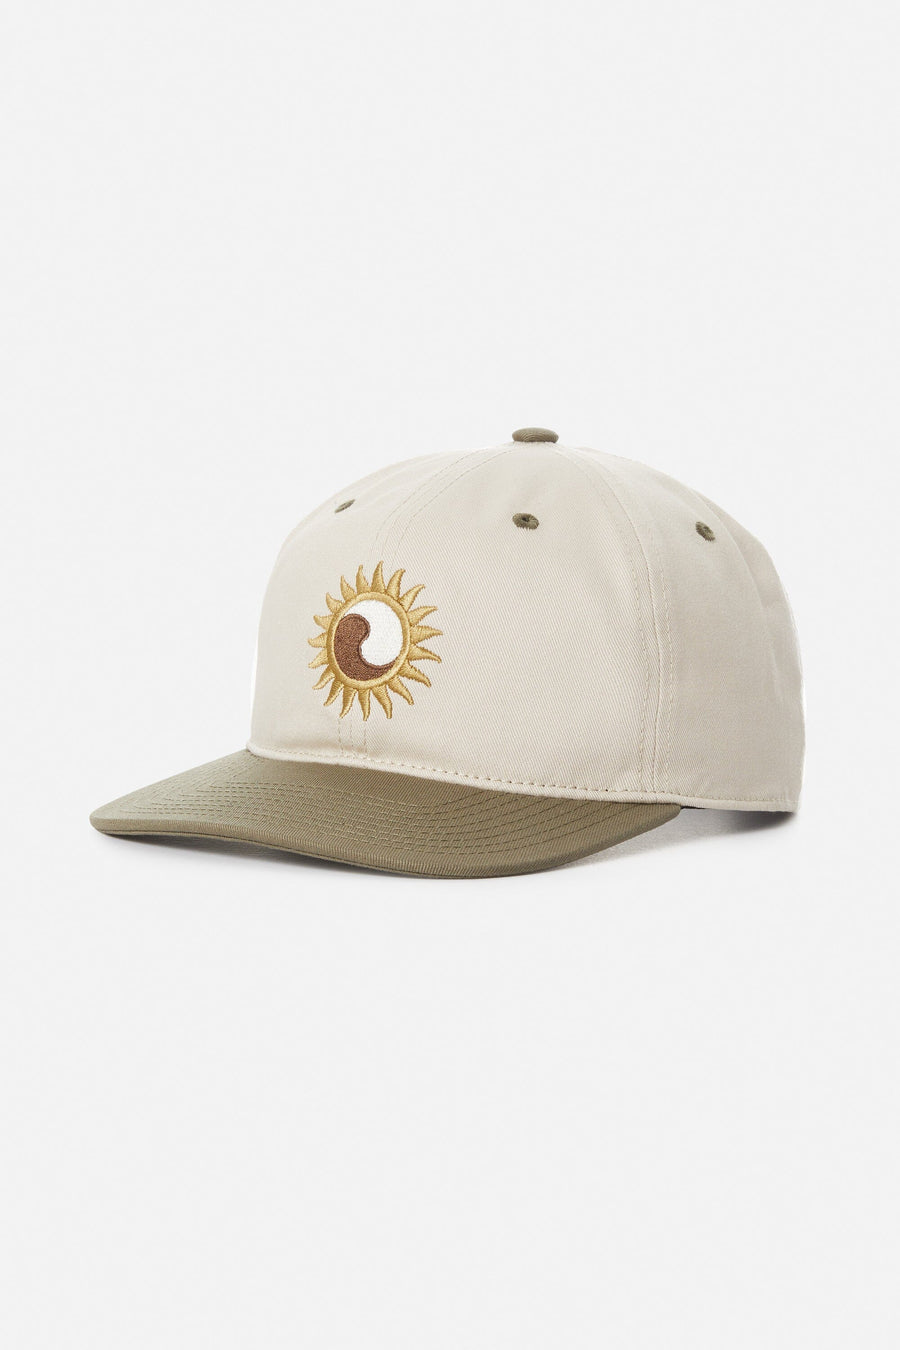 Katin Sunfire Hat Hats Katin Olive 